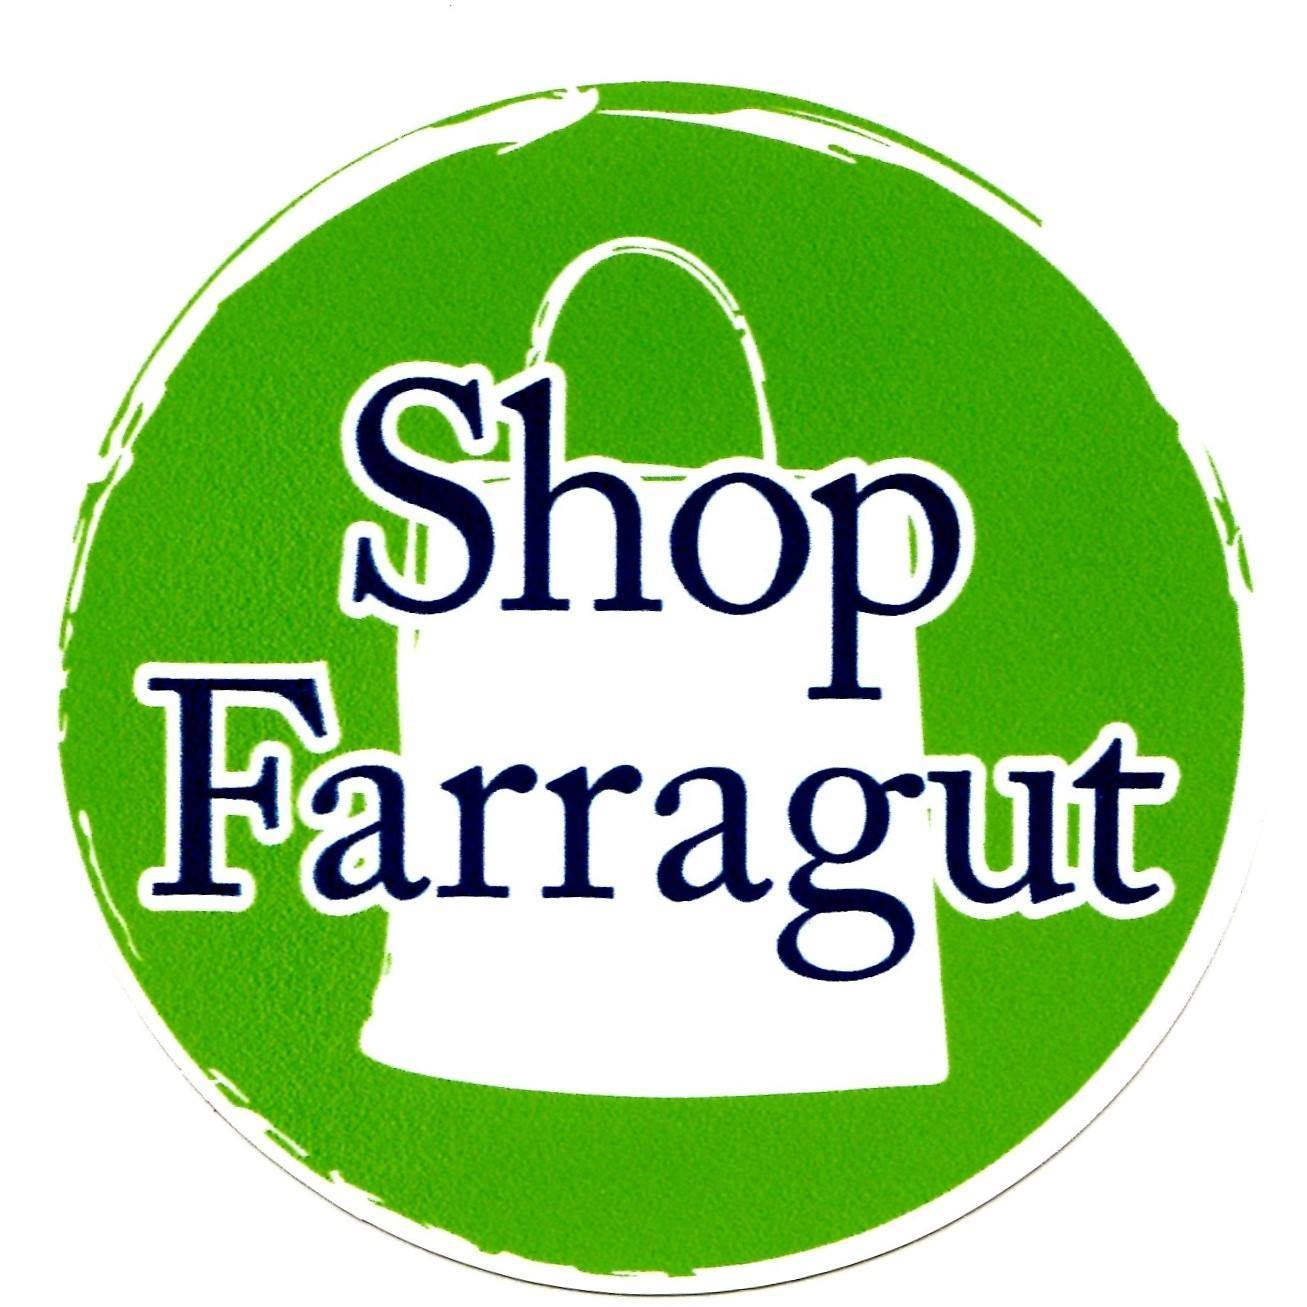 Shop Farragut